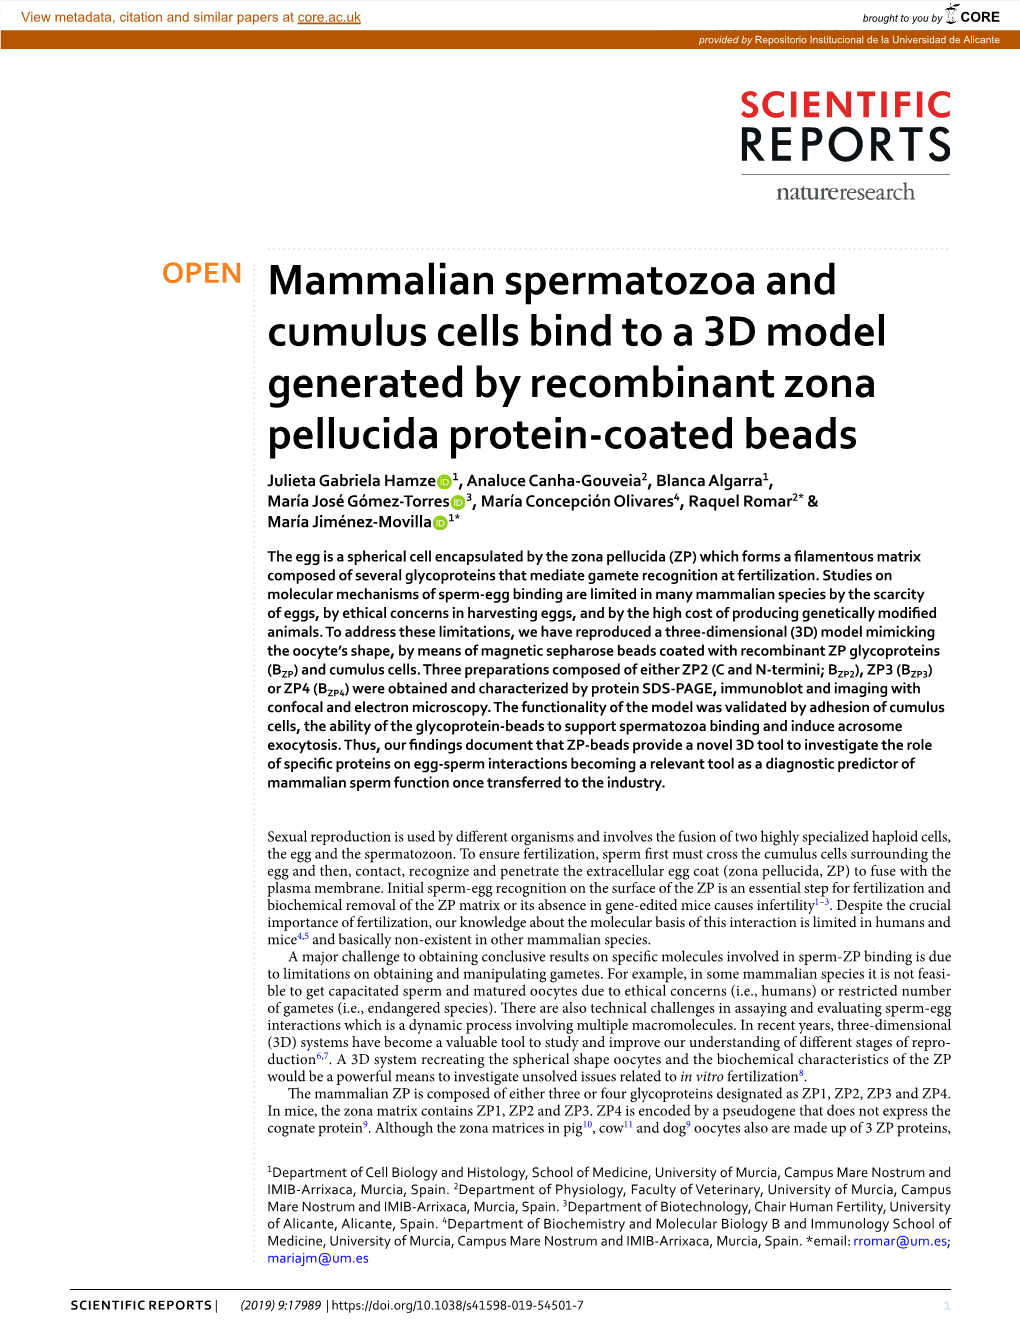 Mammalian Spermatozoa and Cumulus Cells Bind to a 3D